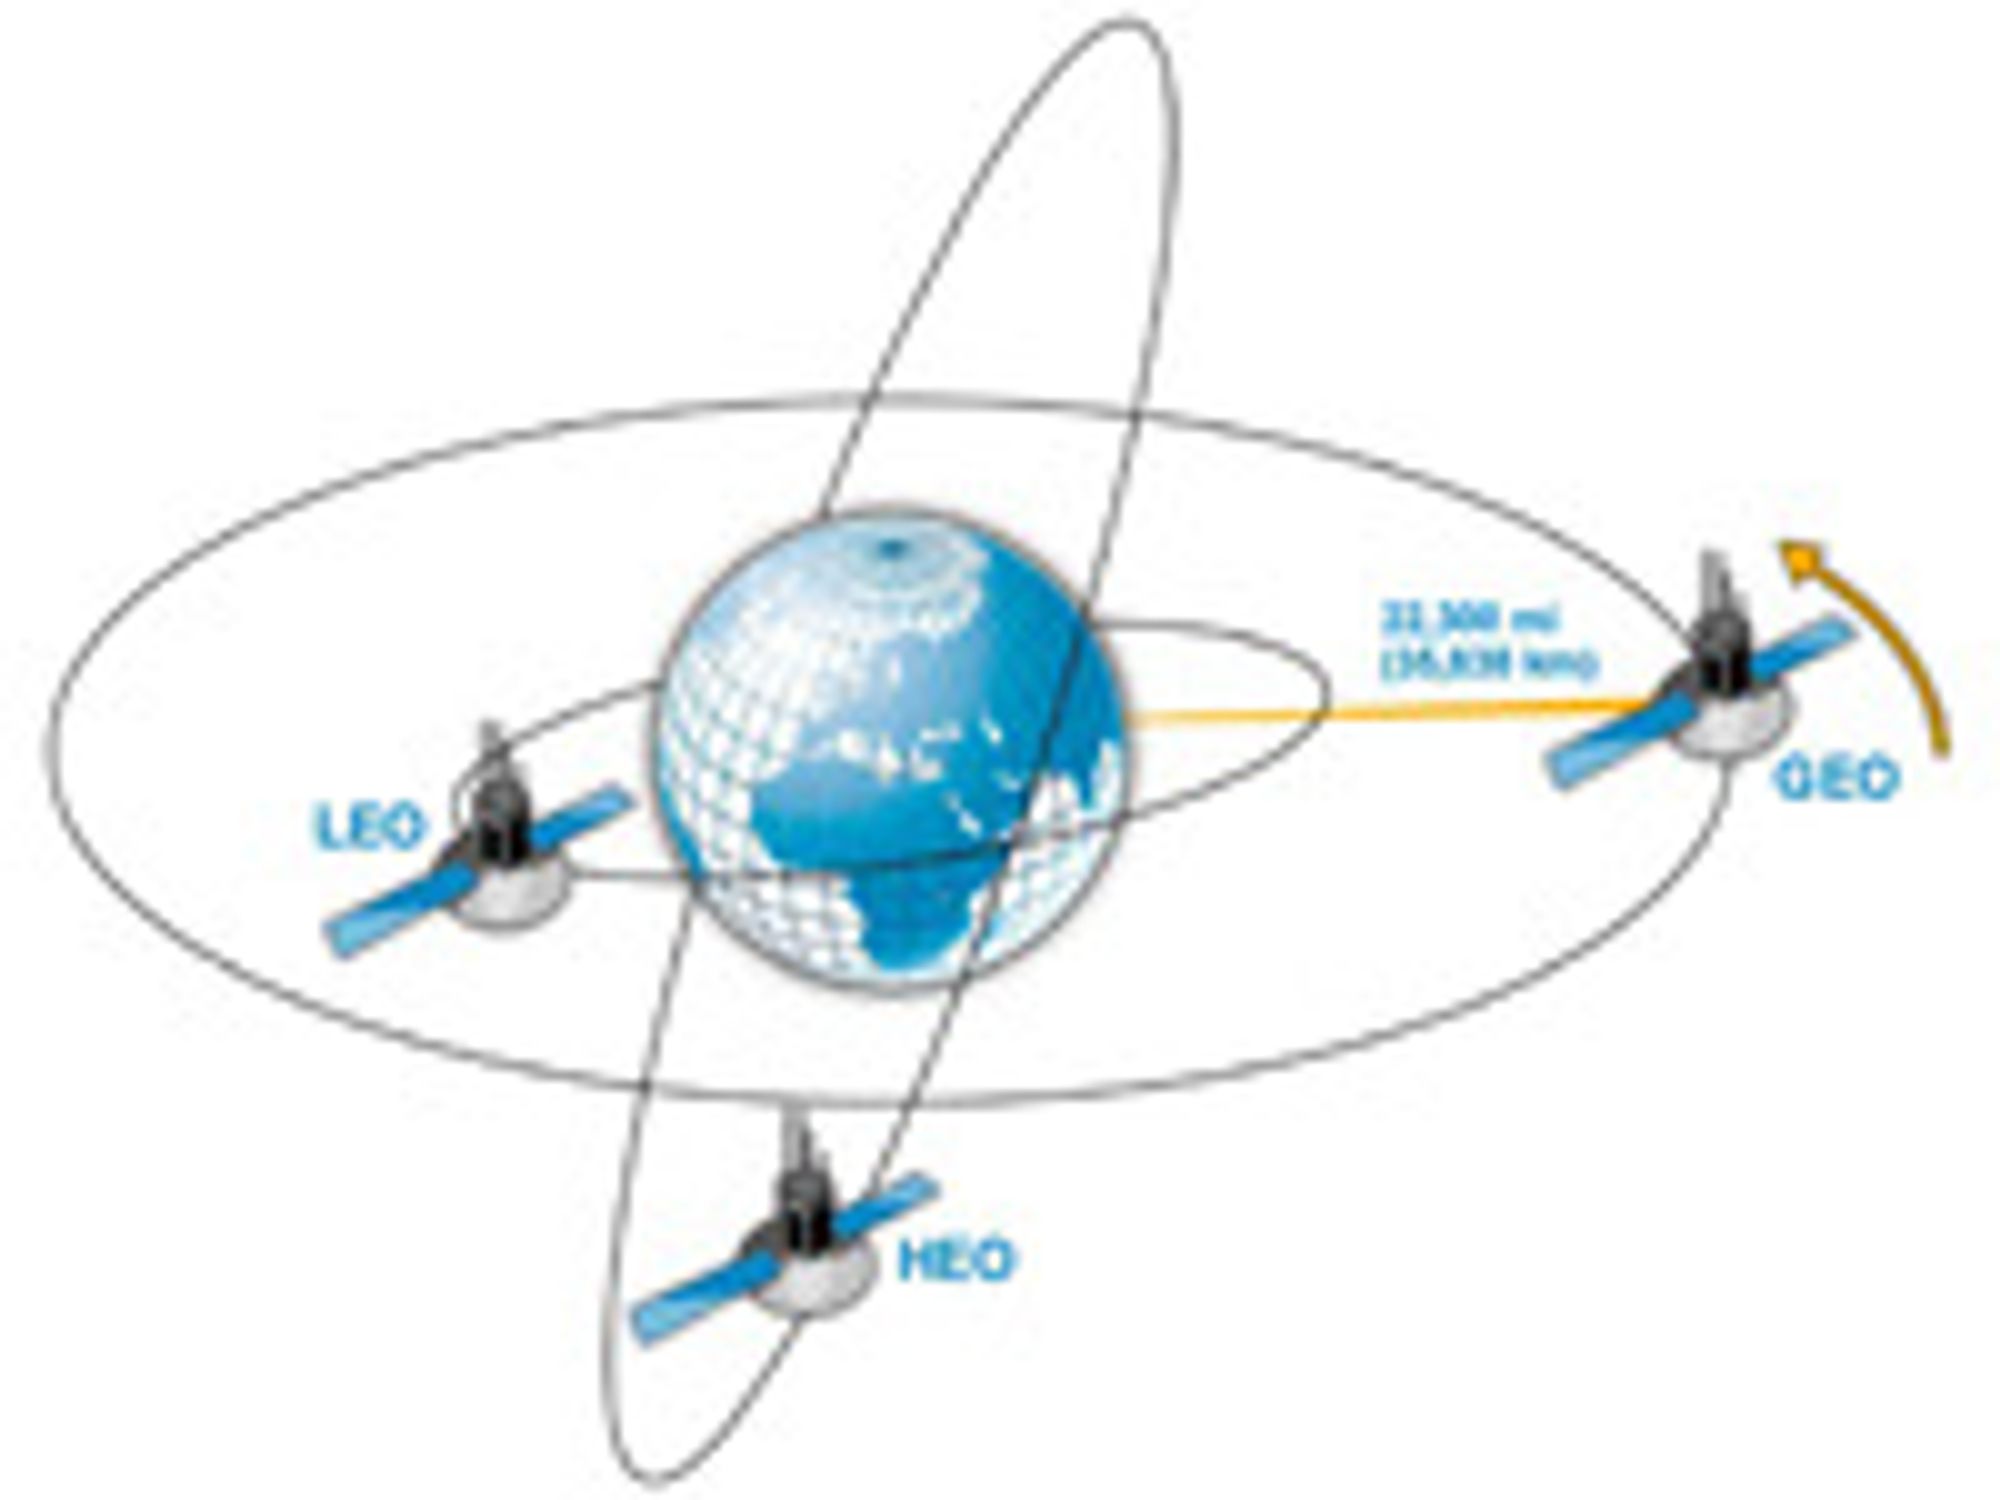 Leonardo Nve mener alle typer satellitter med datakommunikasjon er sårbare for angrep.